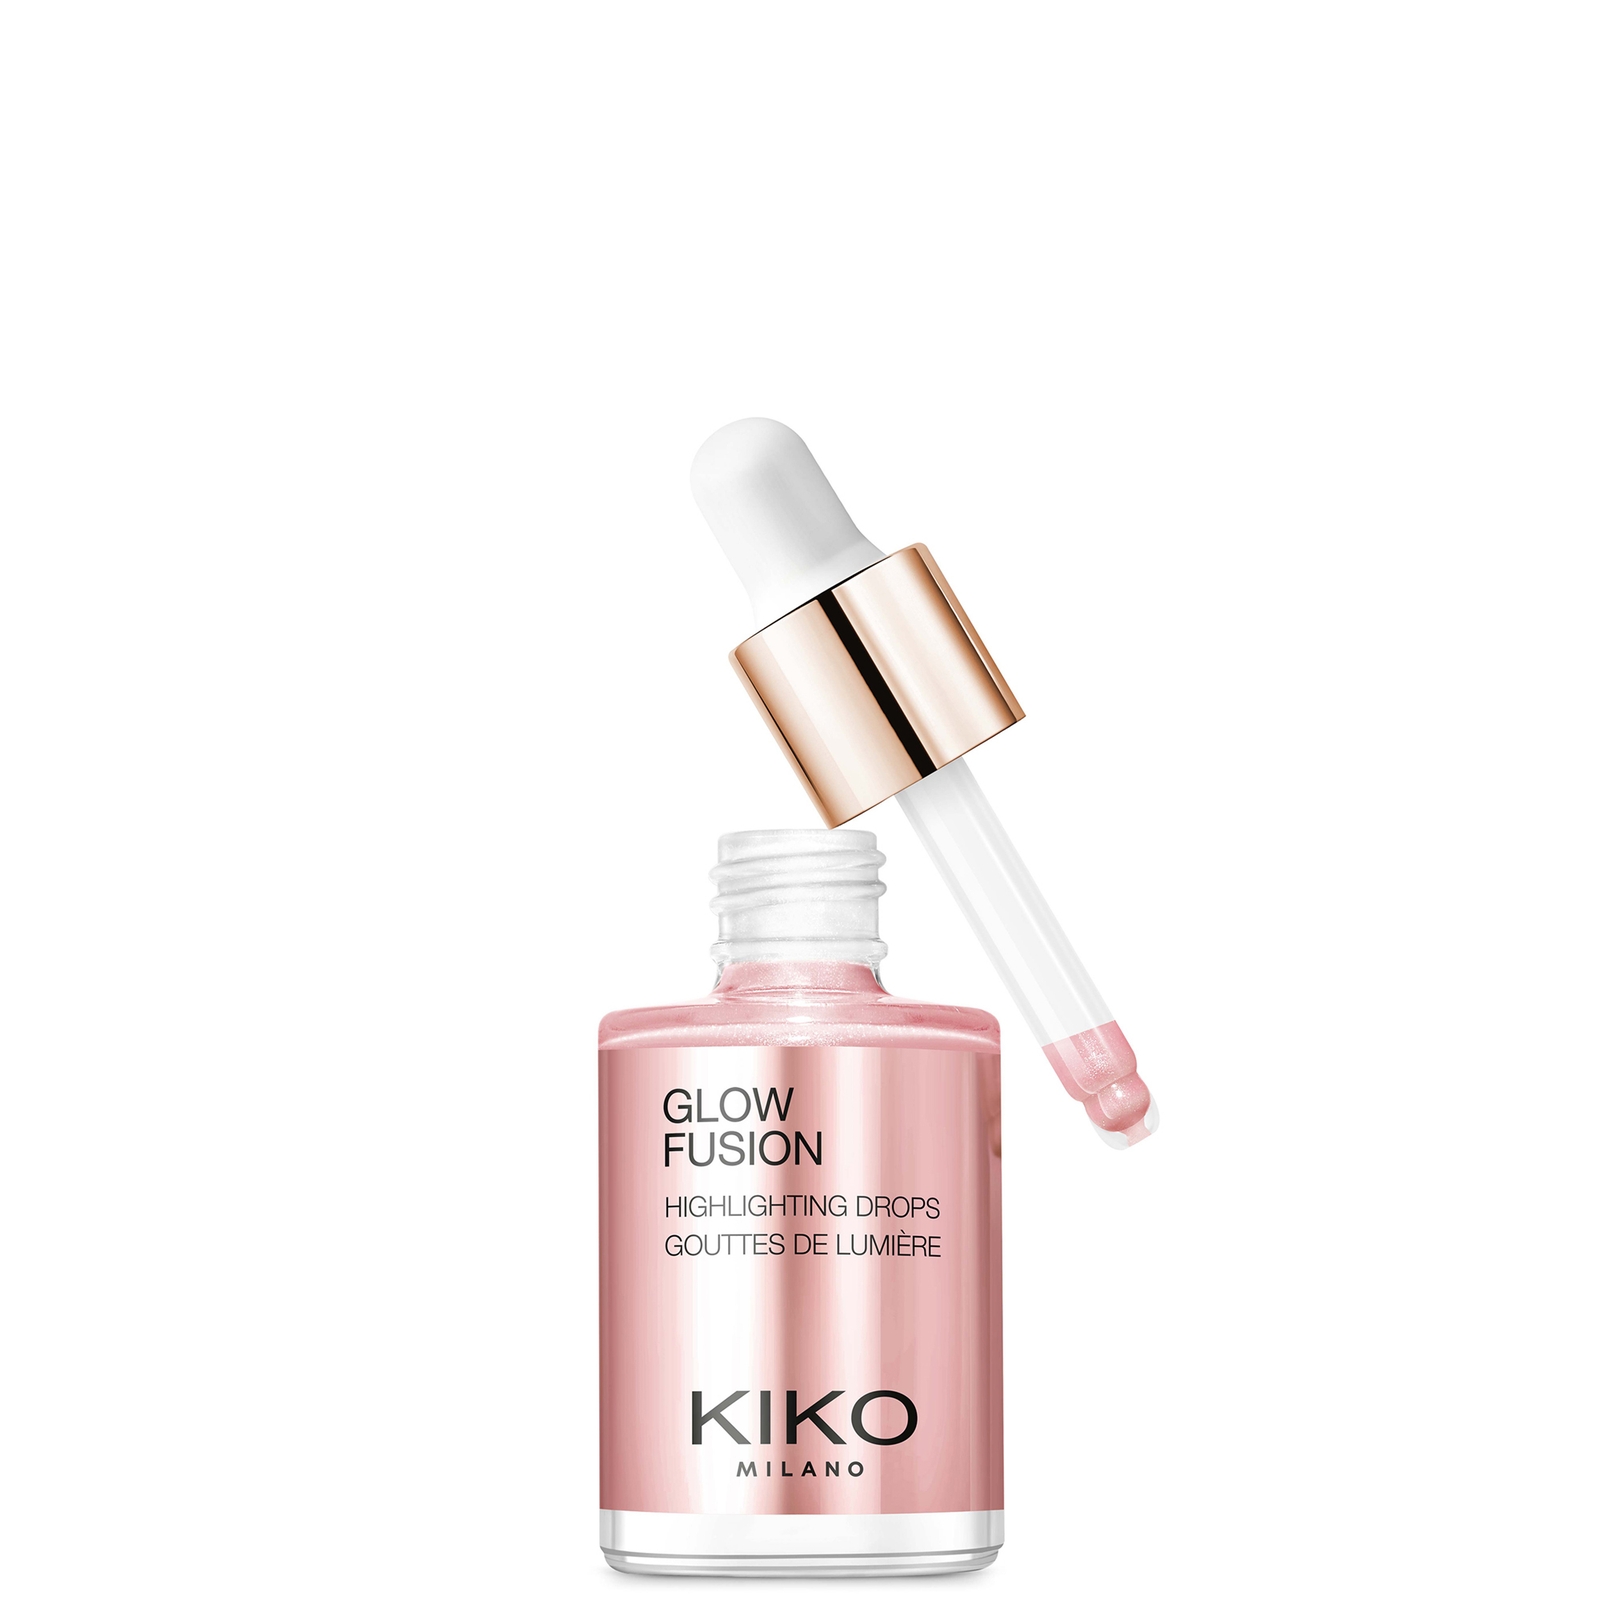 KIKO Milano Glow Fusion Highlighting Drops 10ml (Various Shades) - 01 Platinum Rose